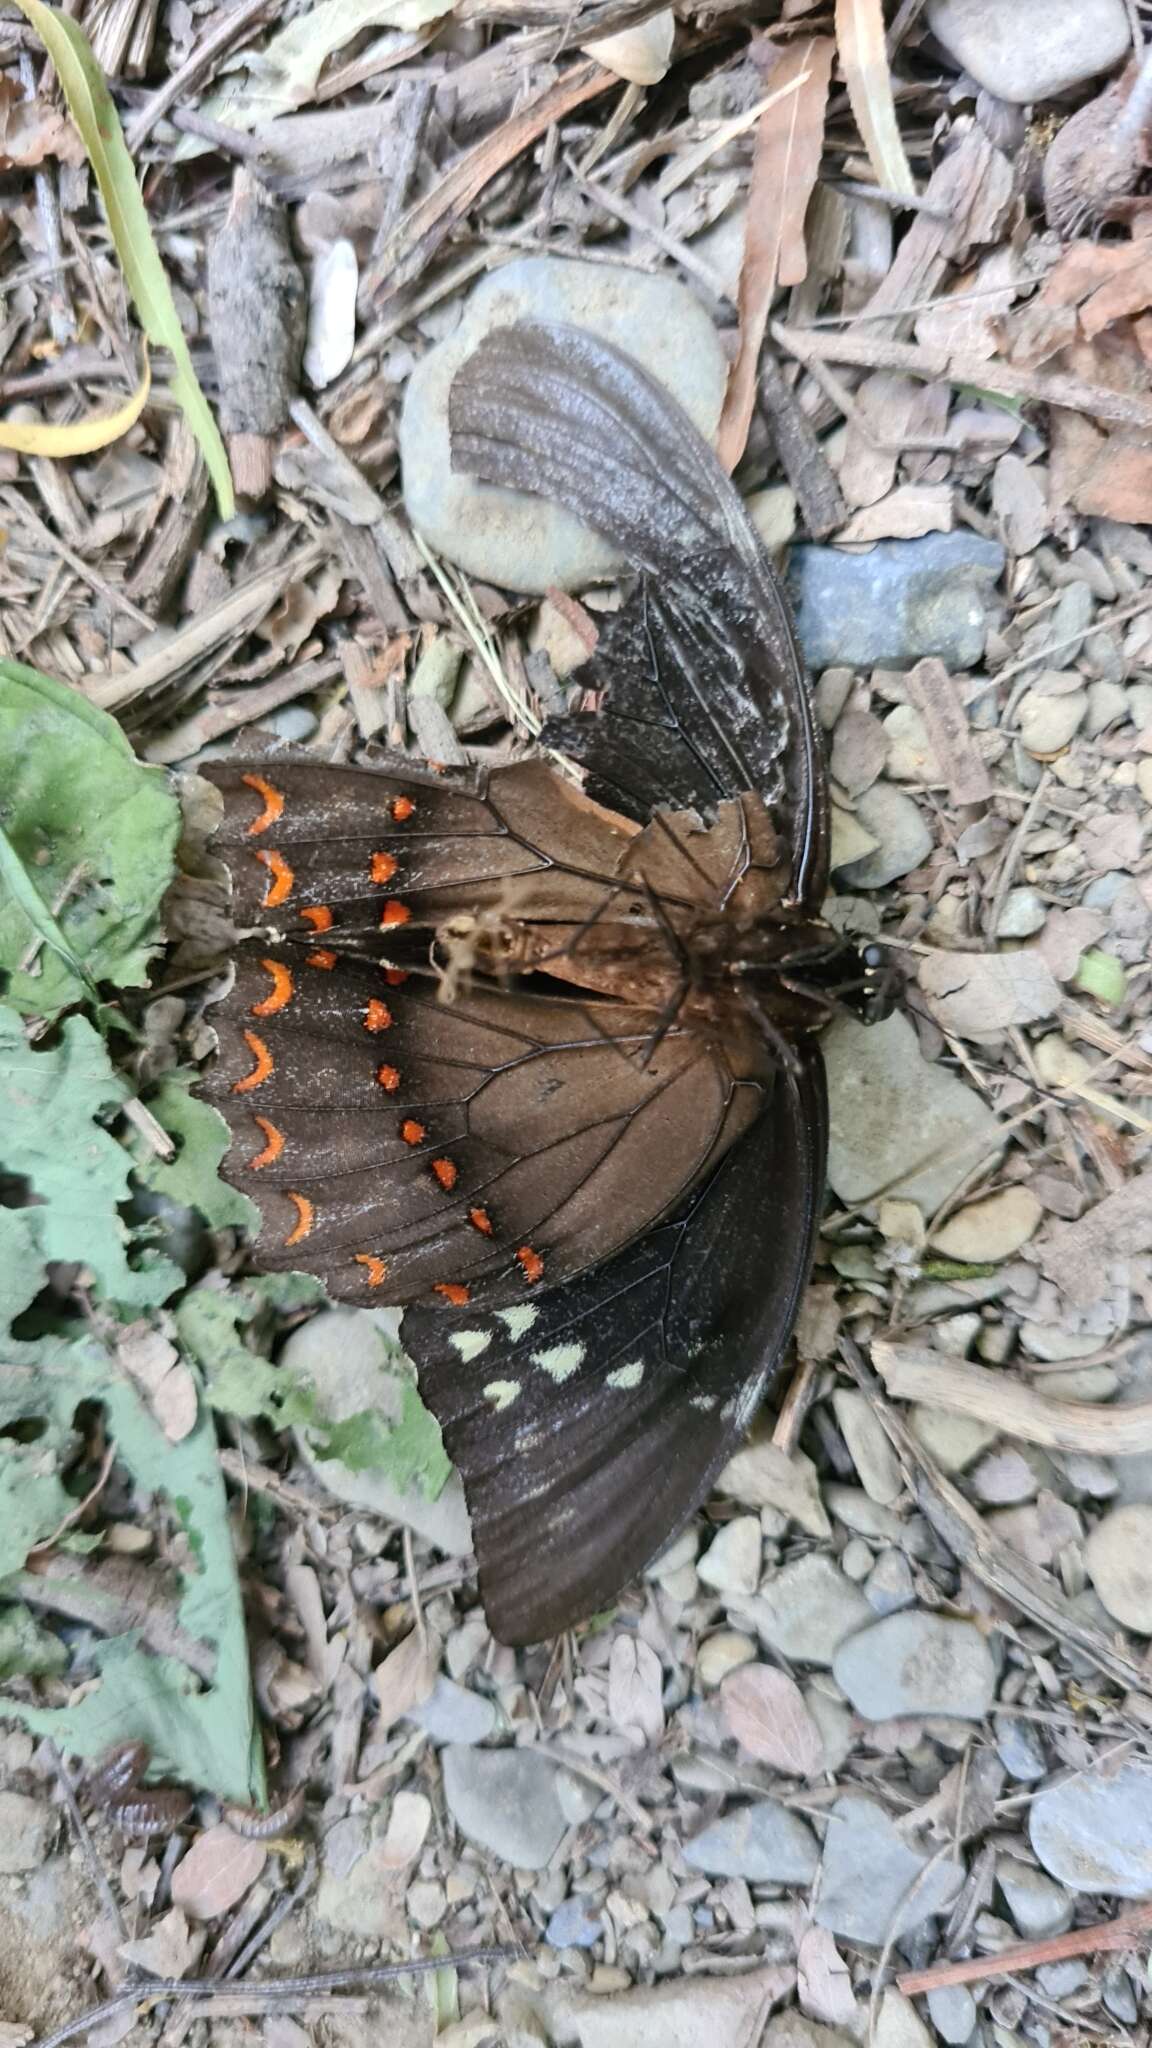 Image of Papilio menatius Hübner 1819